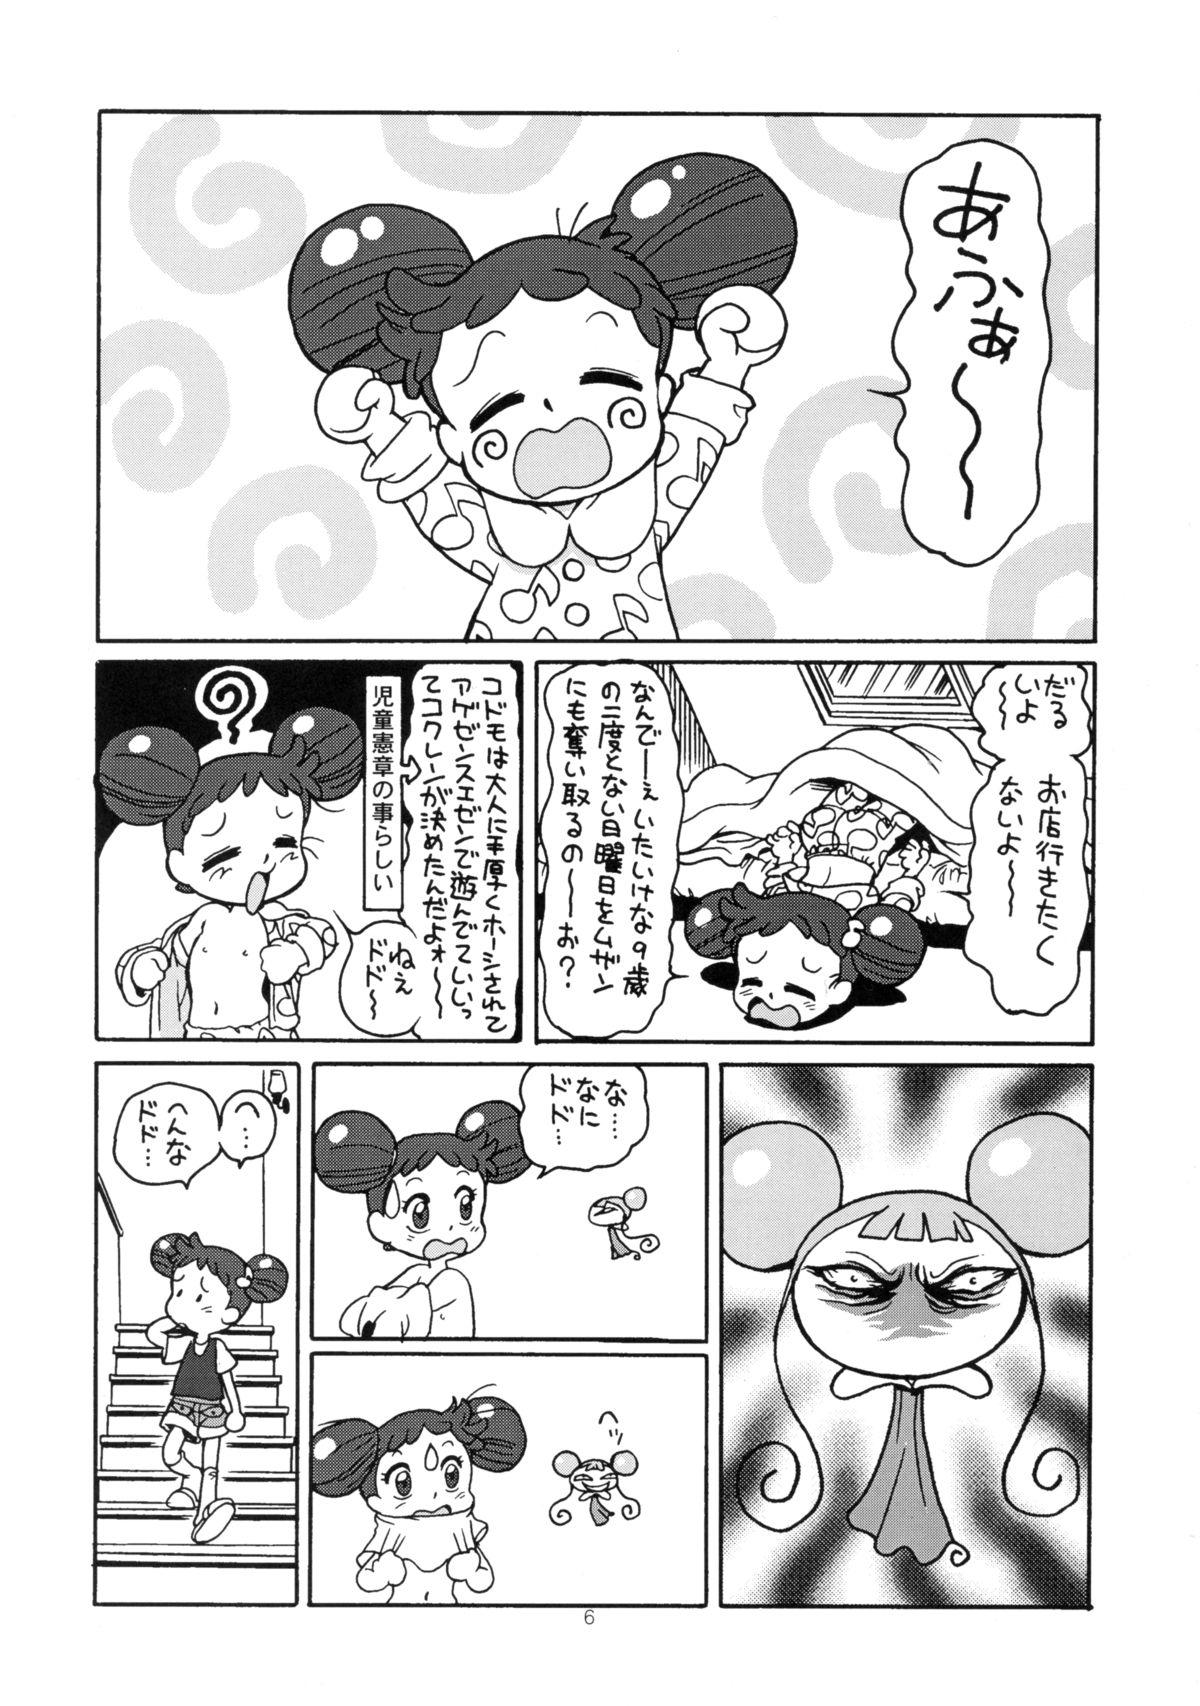 Stepdaughter Yuusaku No Doremi♪ - Ojamajo doremi Nylons - Page 9